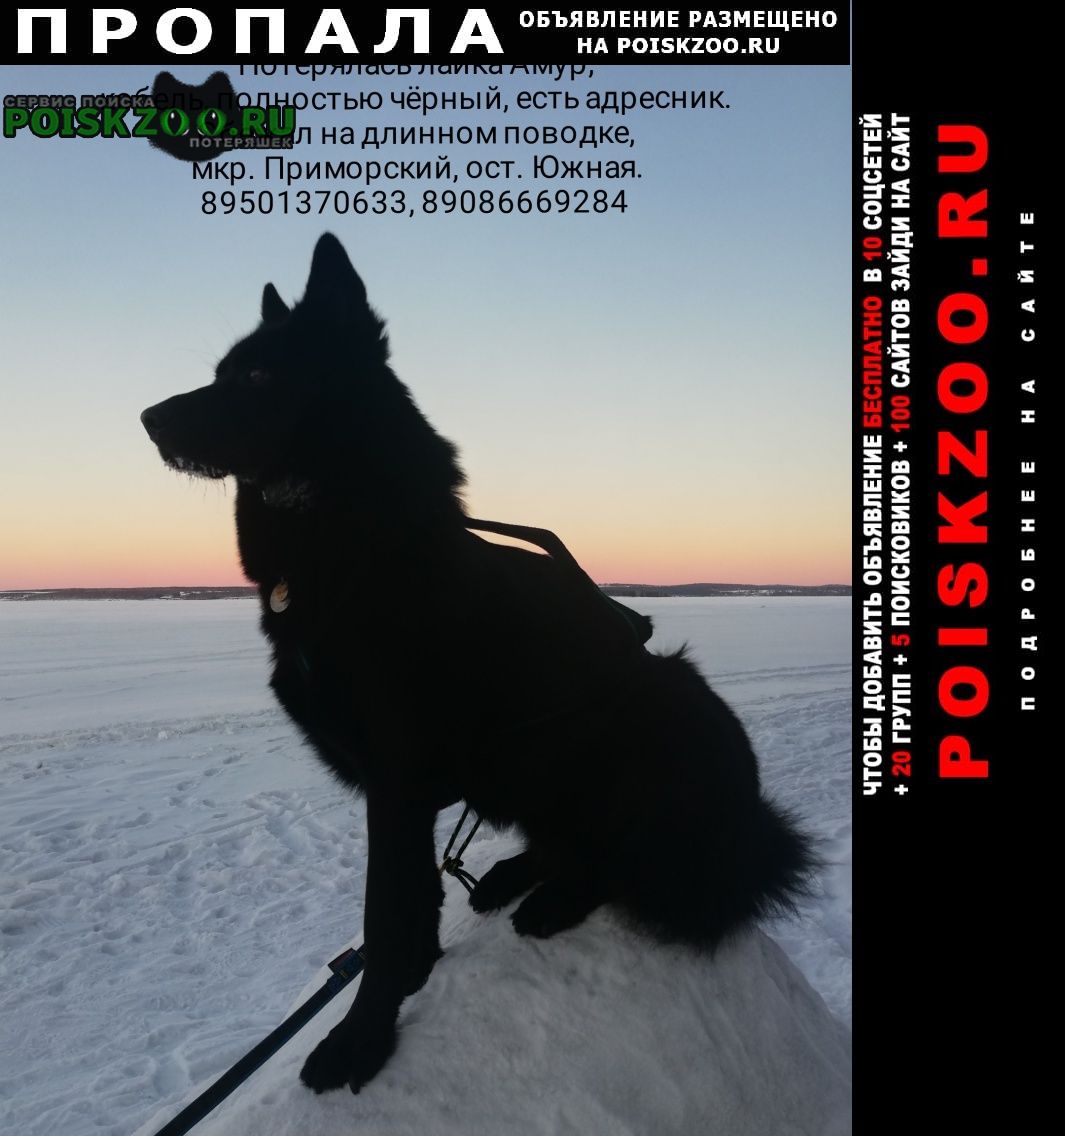 Иркутск Пропала собака кобель лайка чёрная ост. южная